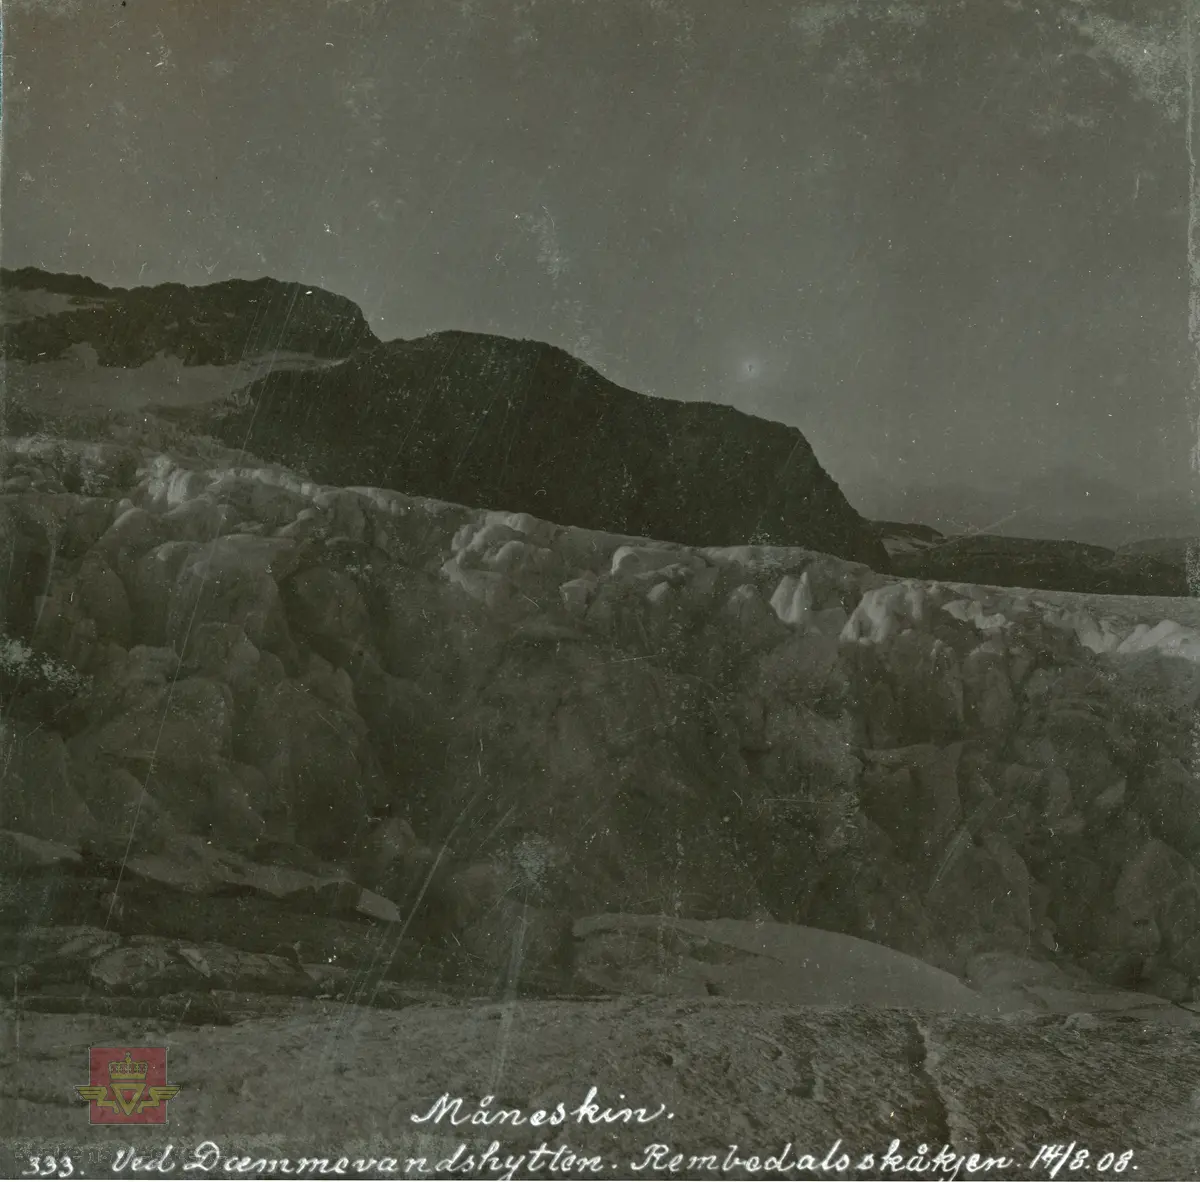 Album fra 1903-1908. Fotografert i måneskinn. Demmevasshytta. Rembesdalsskåka. 14.08.1908.